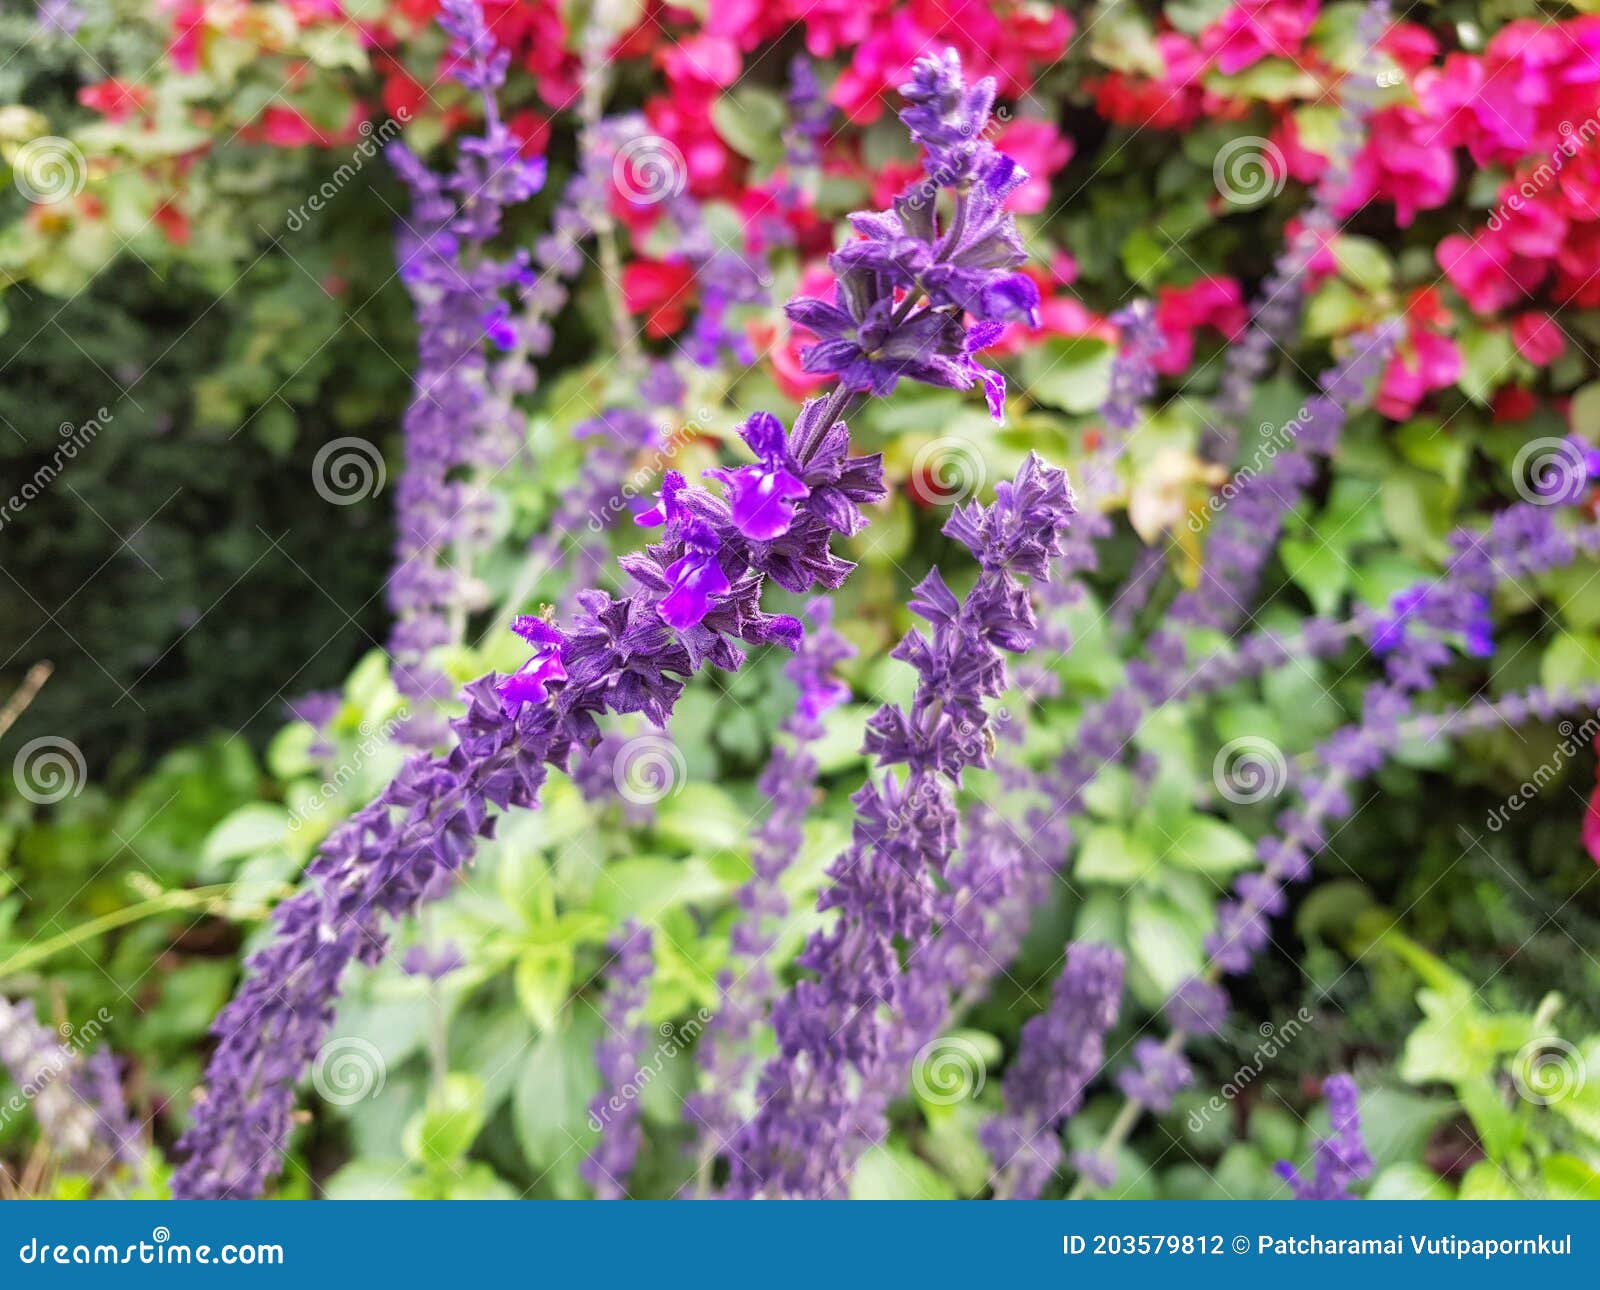 Des Fleurs En Petites Fleurs Violettes En Bord De Route De Jardin Disposées  Dans De Longues Tiges Photo stock - Image du beauté, herbacé: 203579812